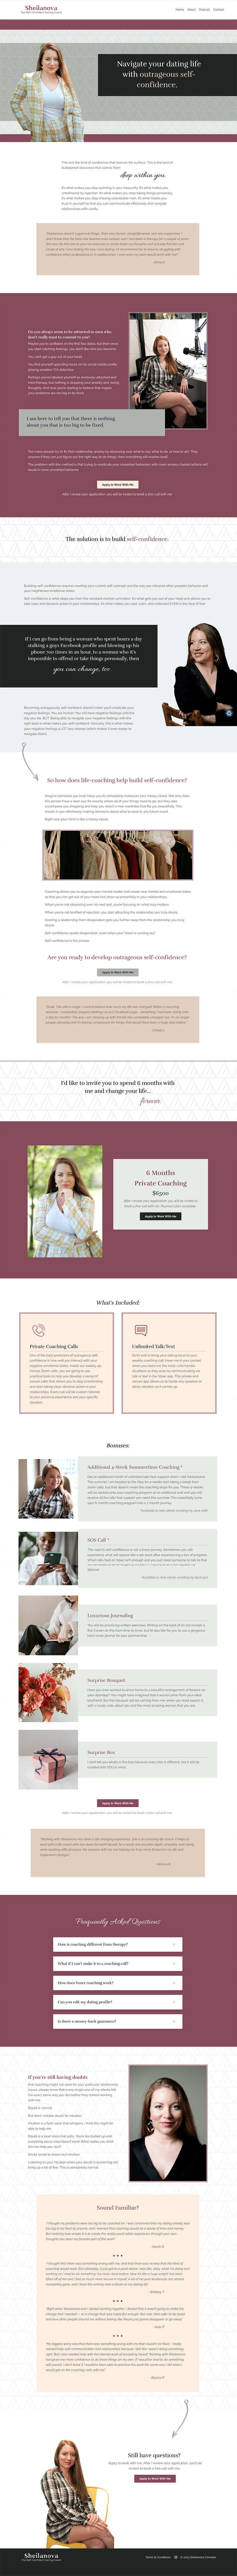 Sheilanova Dating Coach homepage design in Kajabi